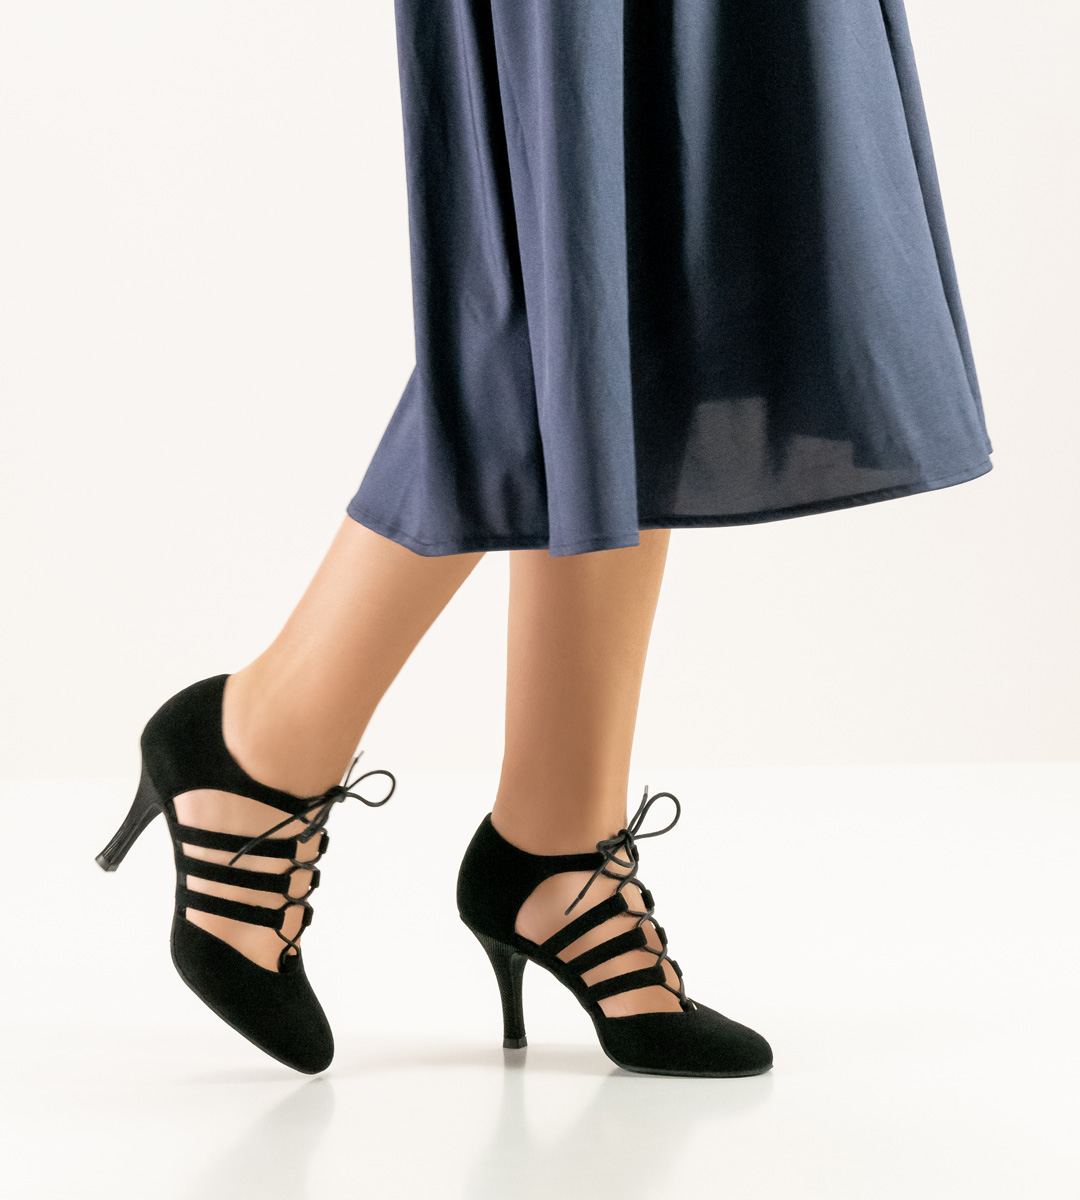 blue-grey skirt in combination with 8 cm high Nueva Epoca ladies dance shoe